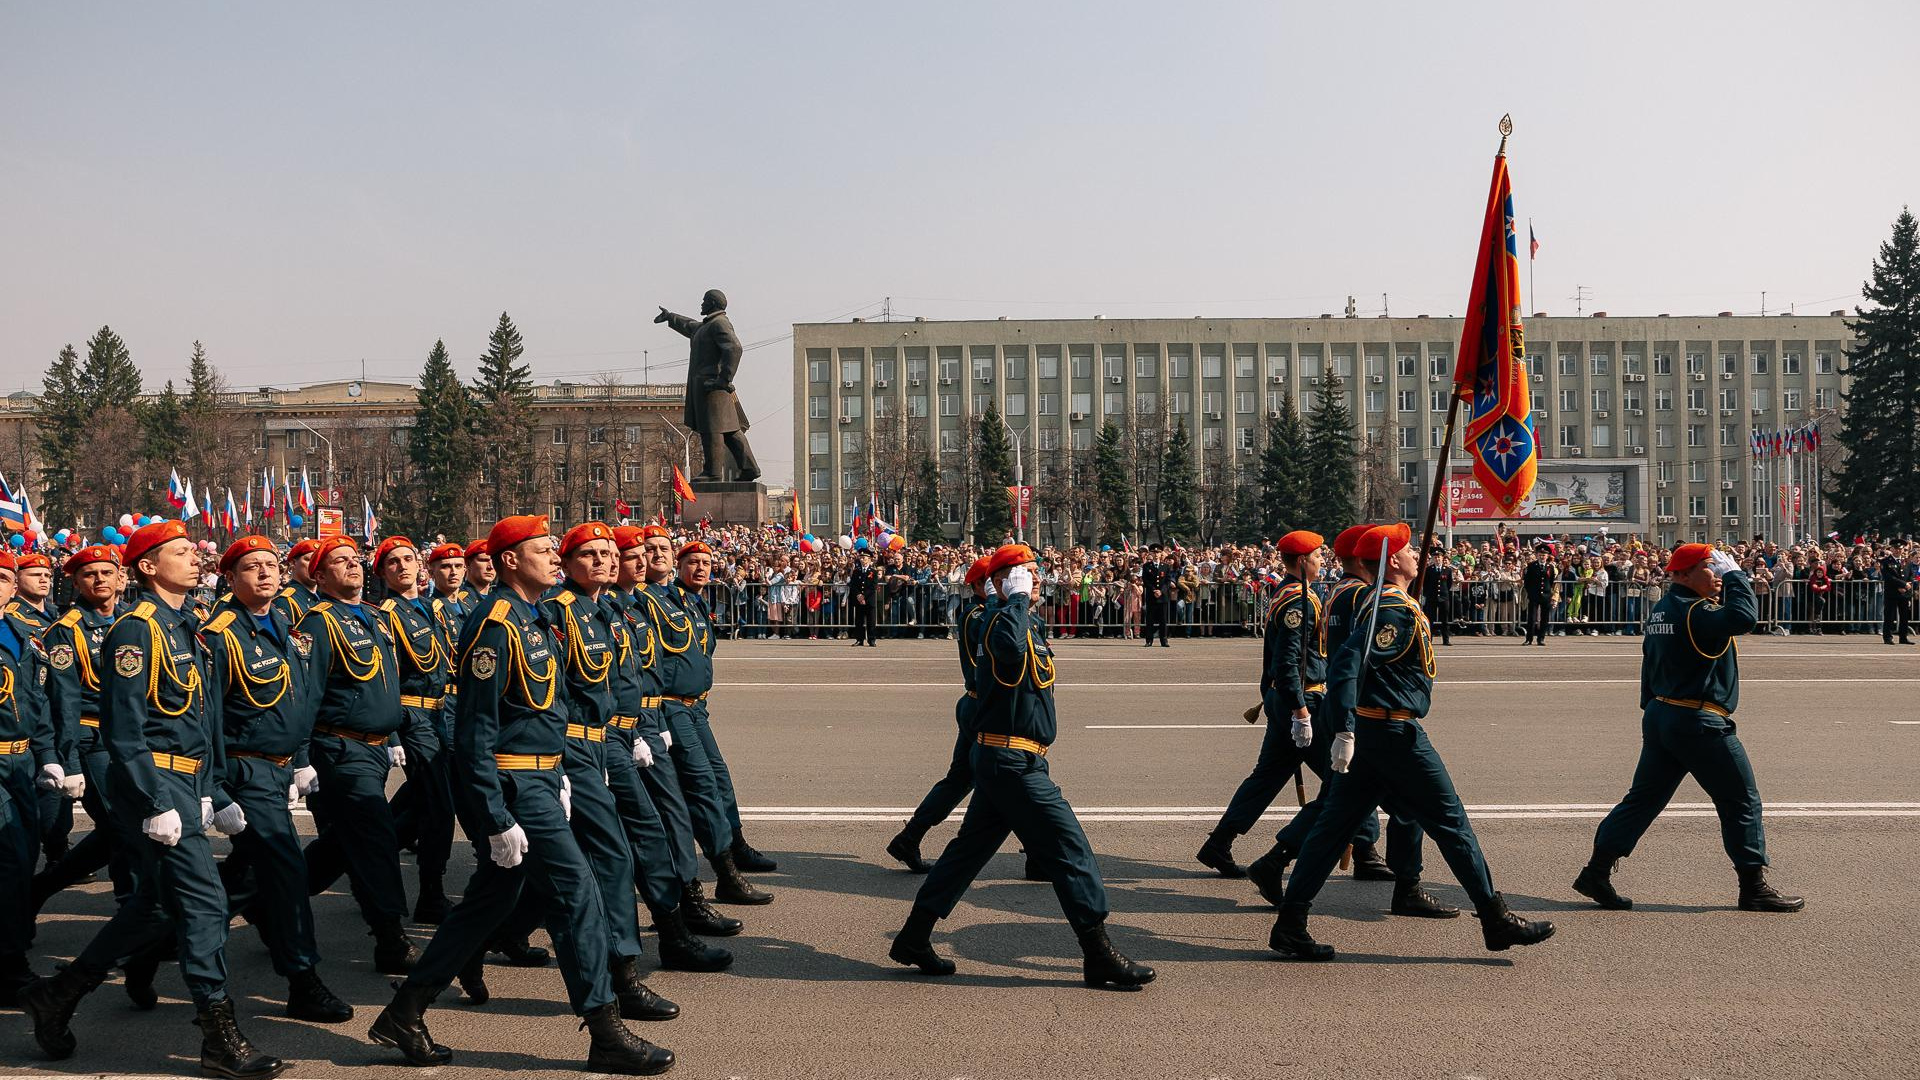 Власти Кемерова утвердили программу празднования Дня Победы. Публикуем ее целиком